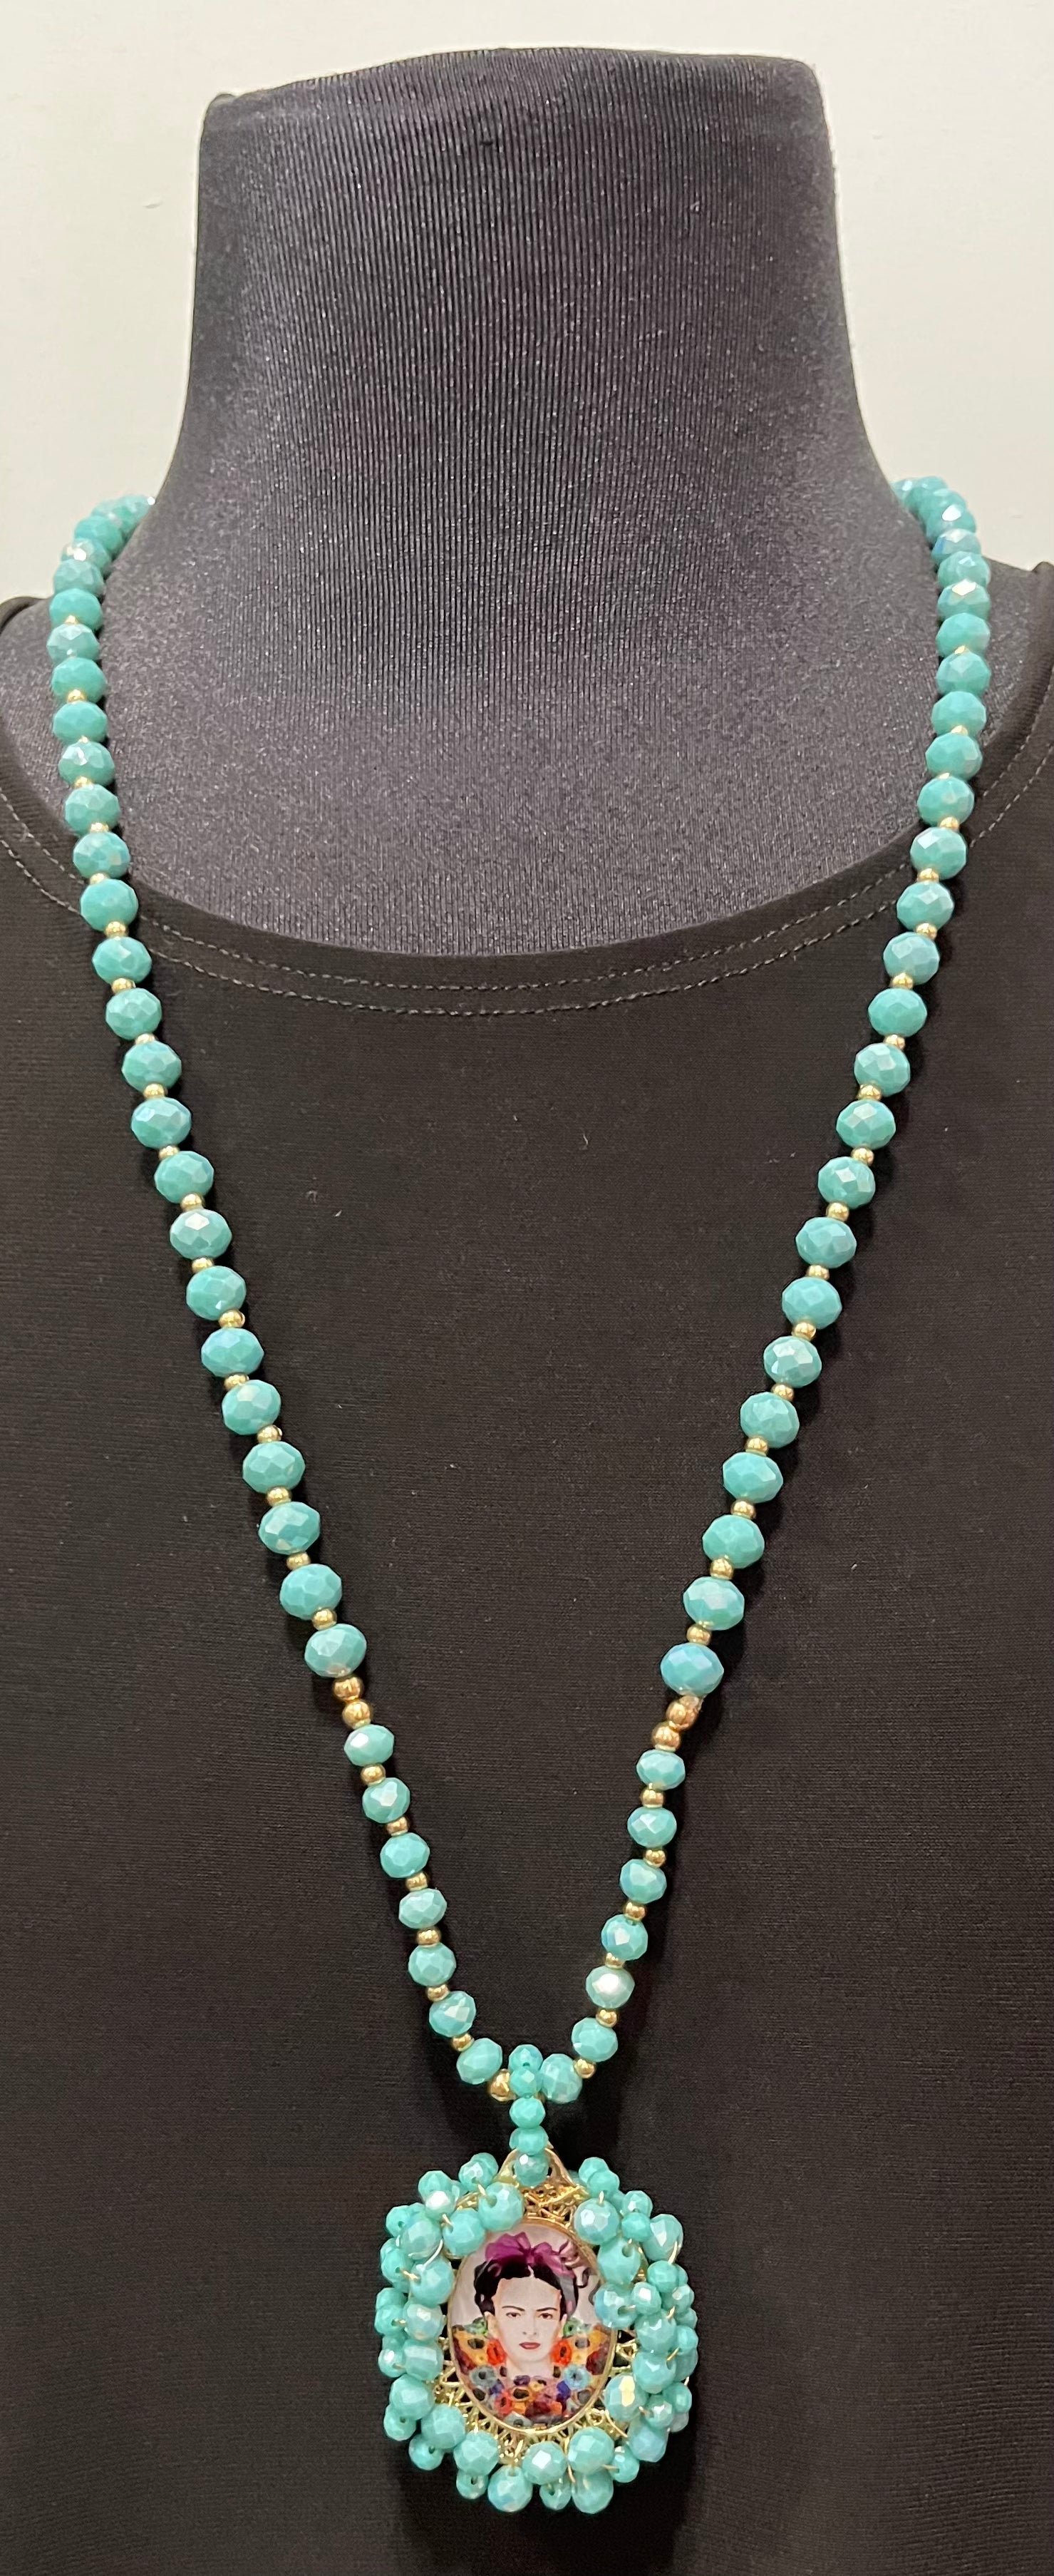 Frida Double Sided Pendant on Turquoise Beads